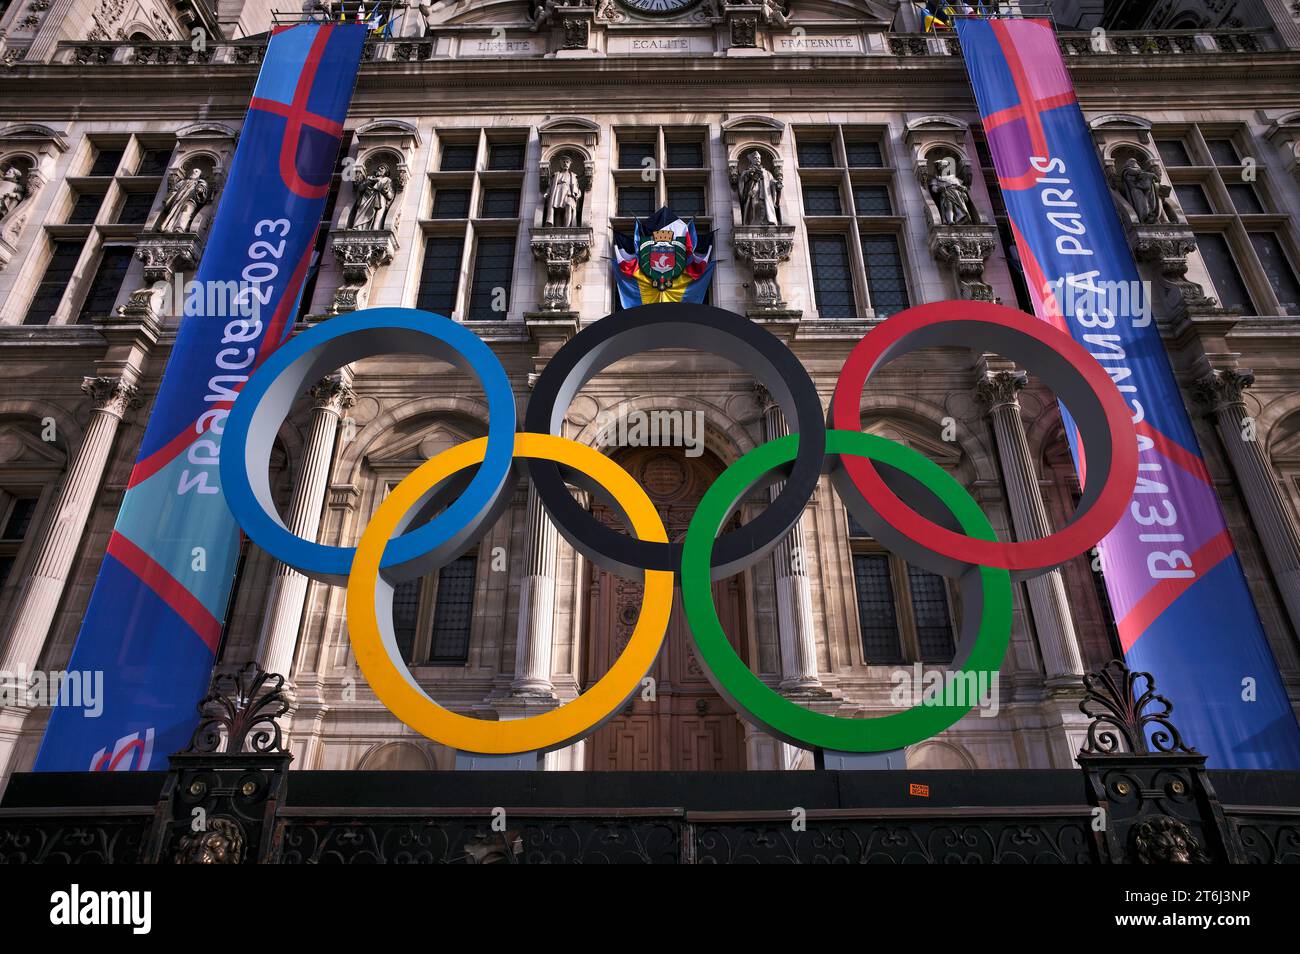 Logo, Rugb, coupe du monde, coupe du monde 2023, anneaux olympiques, jeux Olympiques, logo, à l'occasion des Jeux Olympiques de 2024 à Paris, Hôtel de ville, Paris, France Banque D'Images